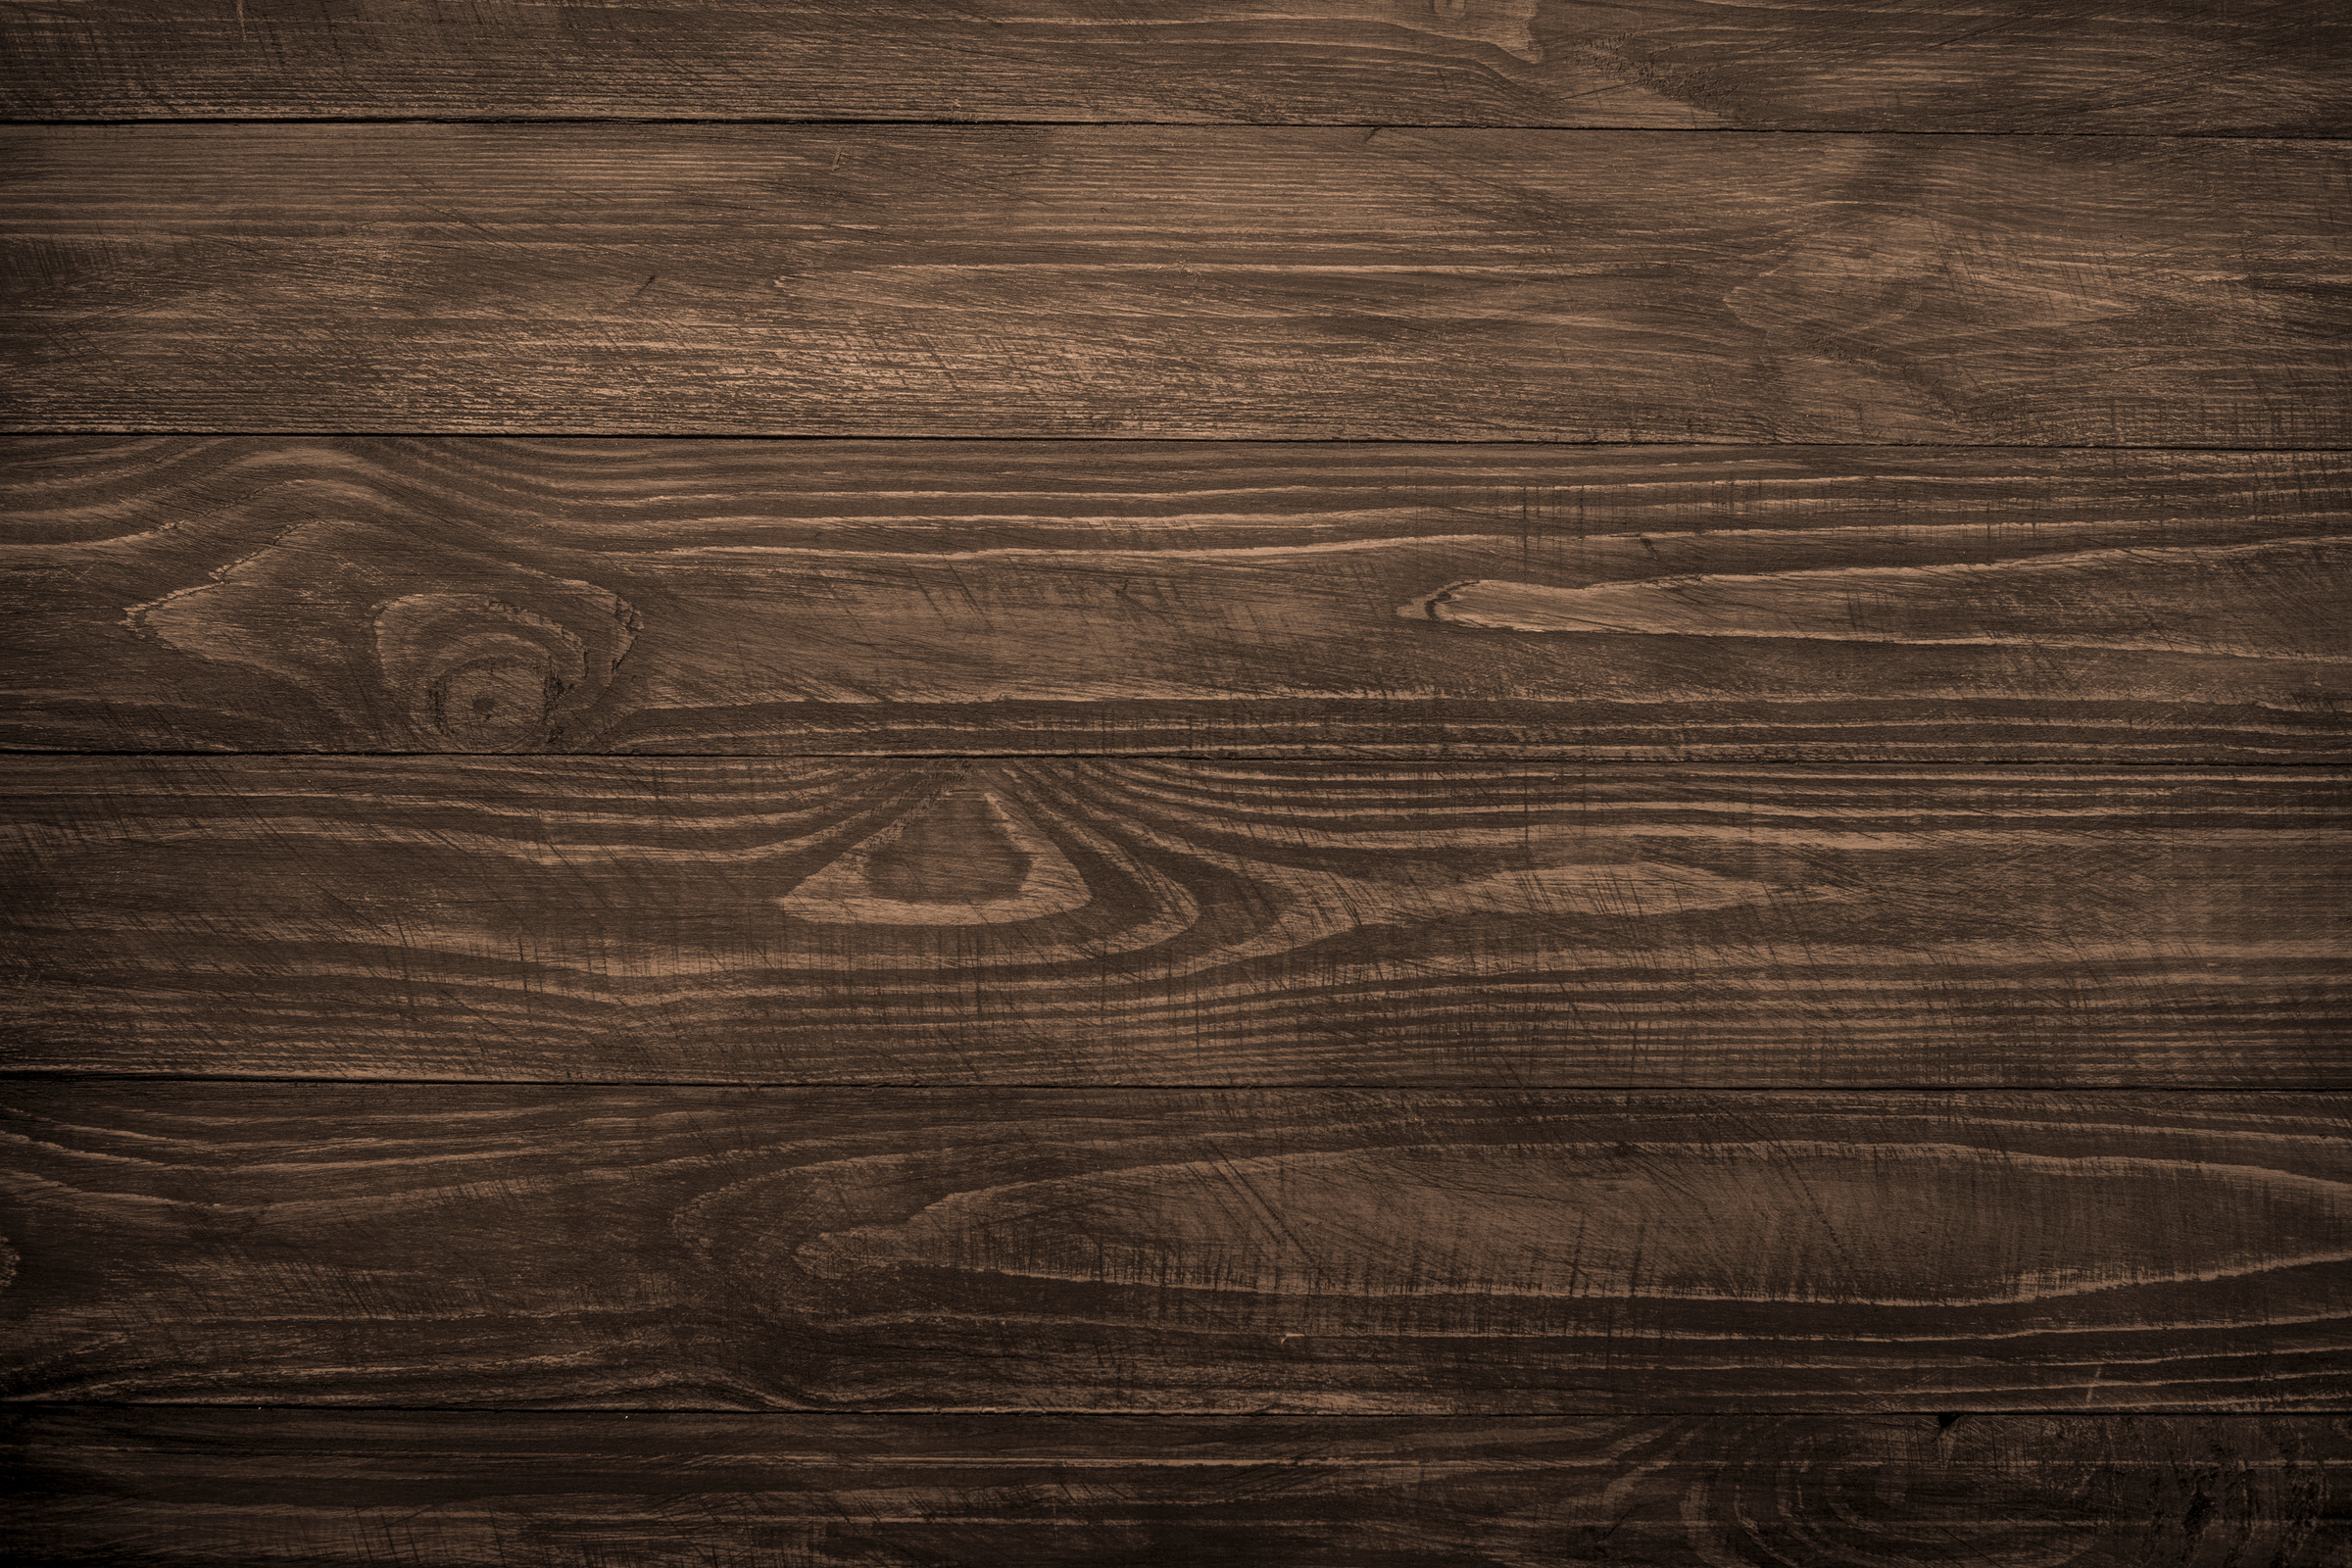 Wooden Background, Dark Wooden Texture.